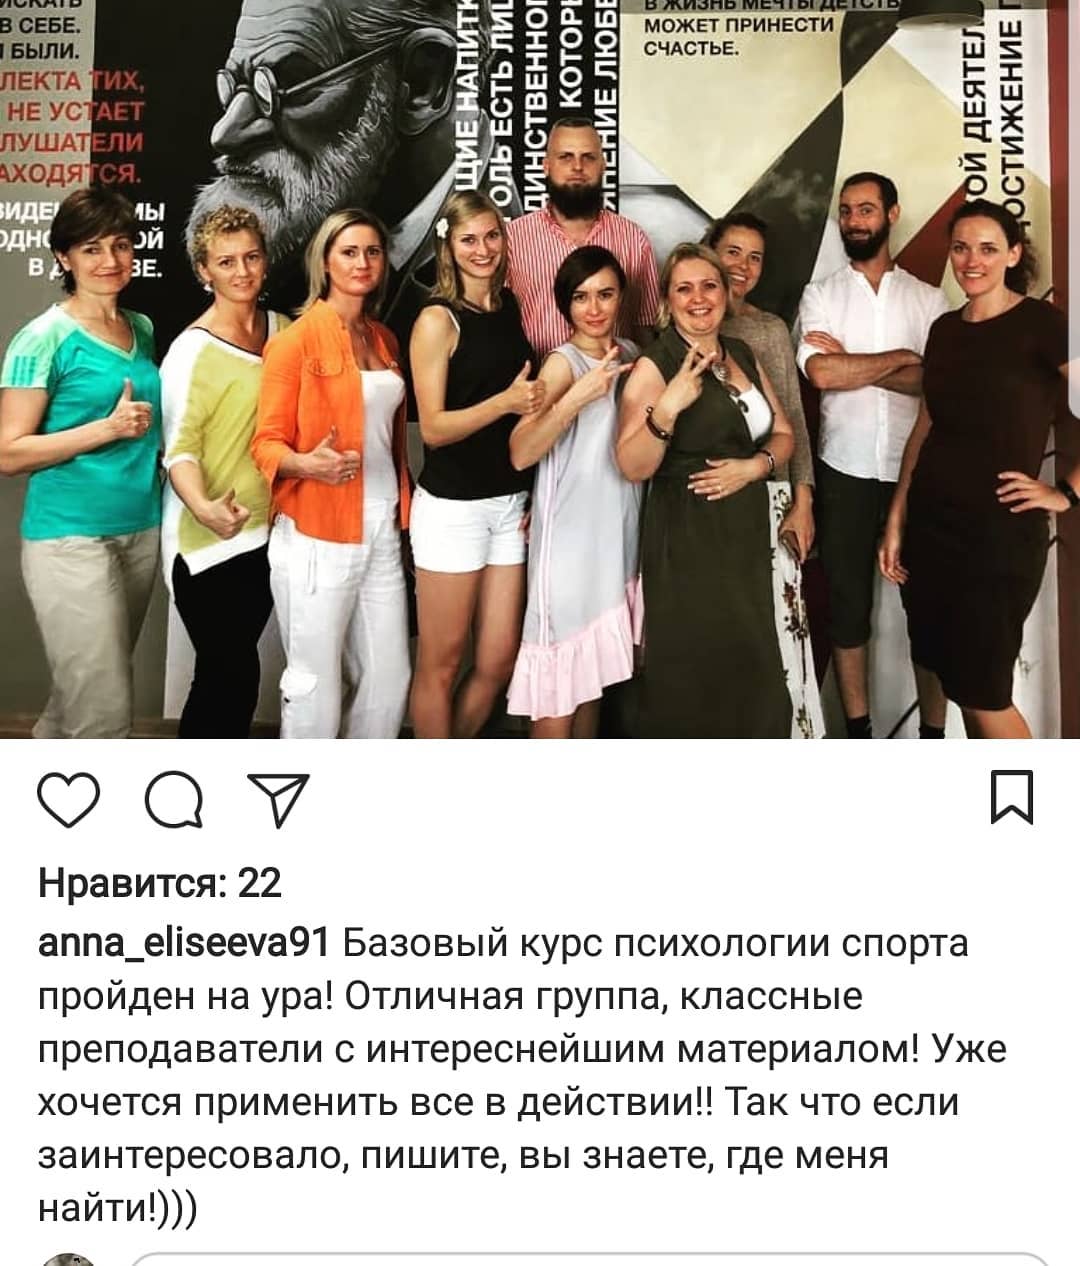 Матвей Елисеев сделал новую публикацию в соц.сети Инстаграм